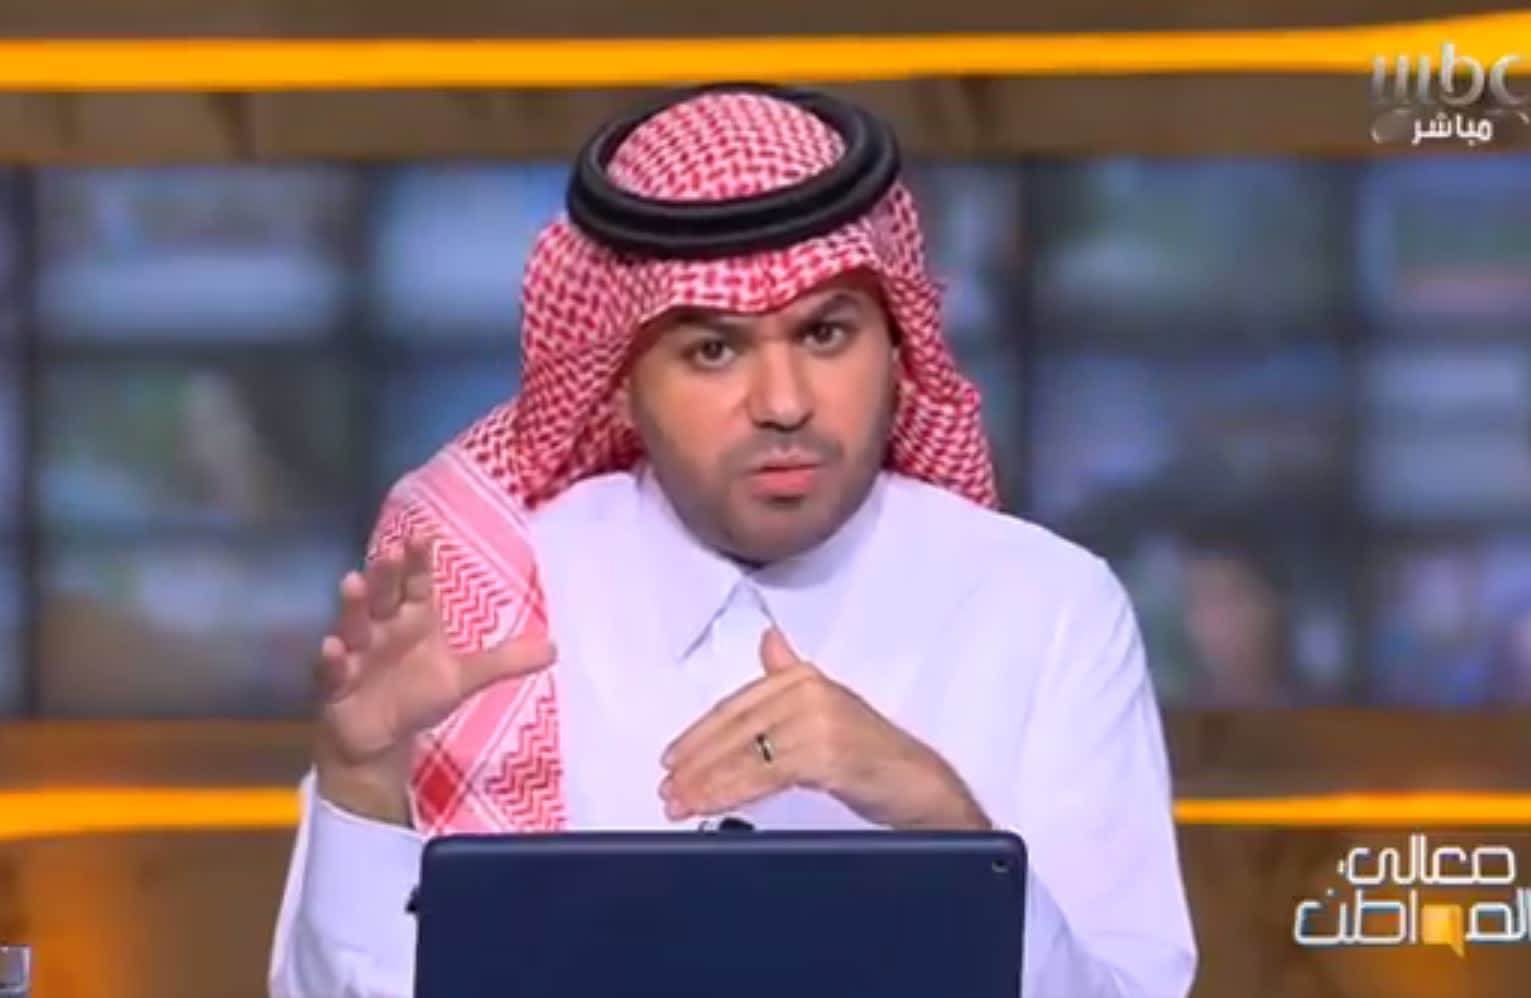 شاهد.. وزير التعليم السعودي يقاضي الإعلامي علي العلياني بعد ادعائه وجود "عصابات توظيف وفساد" بالوزارة